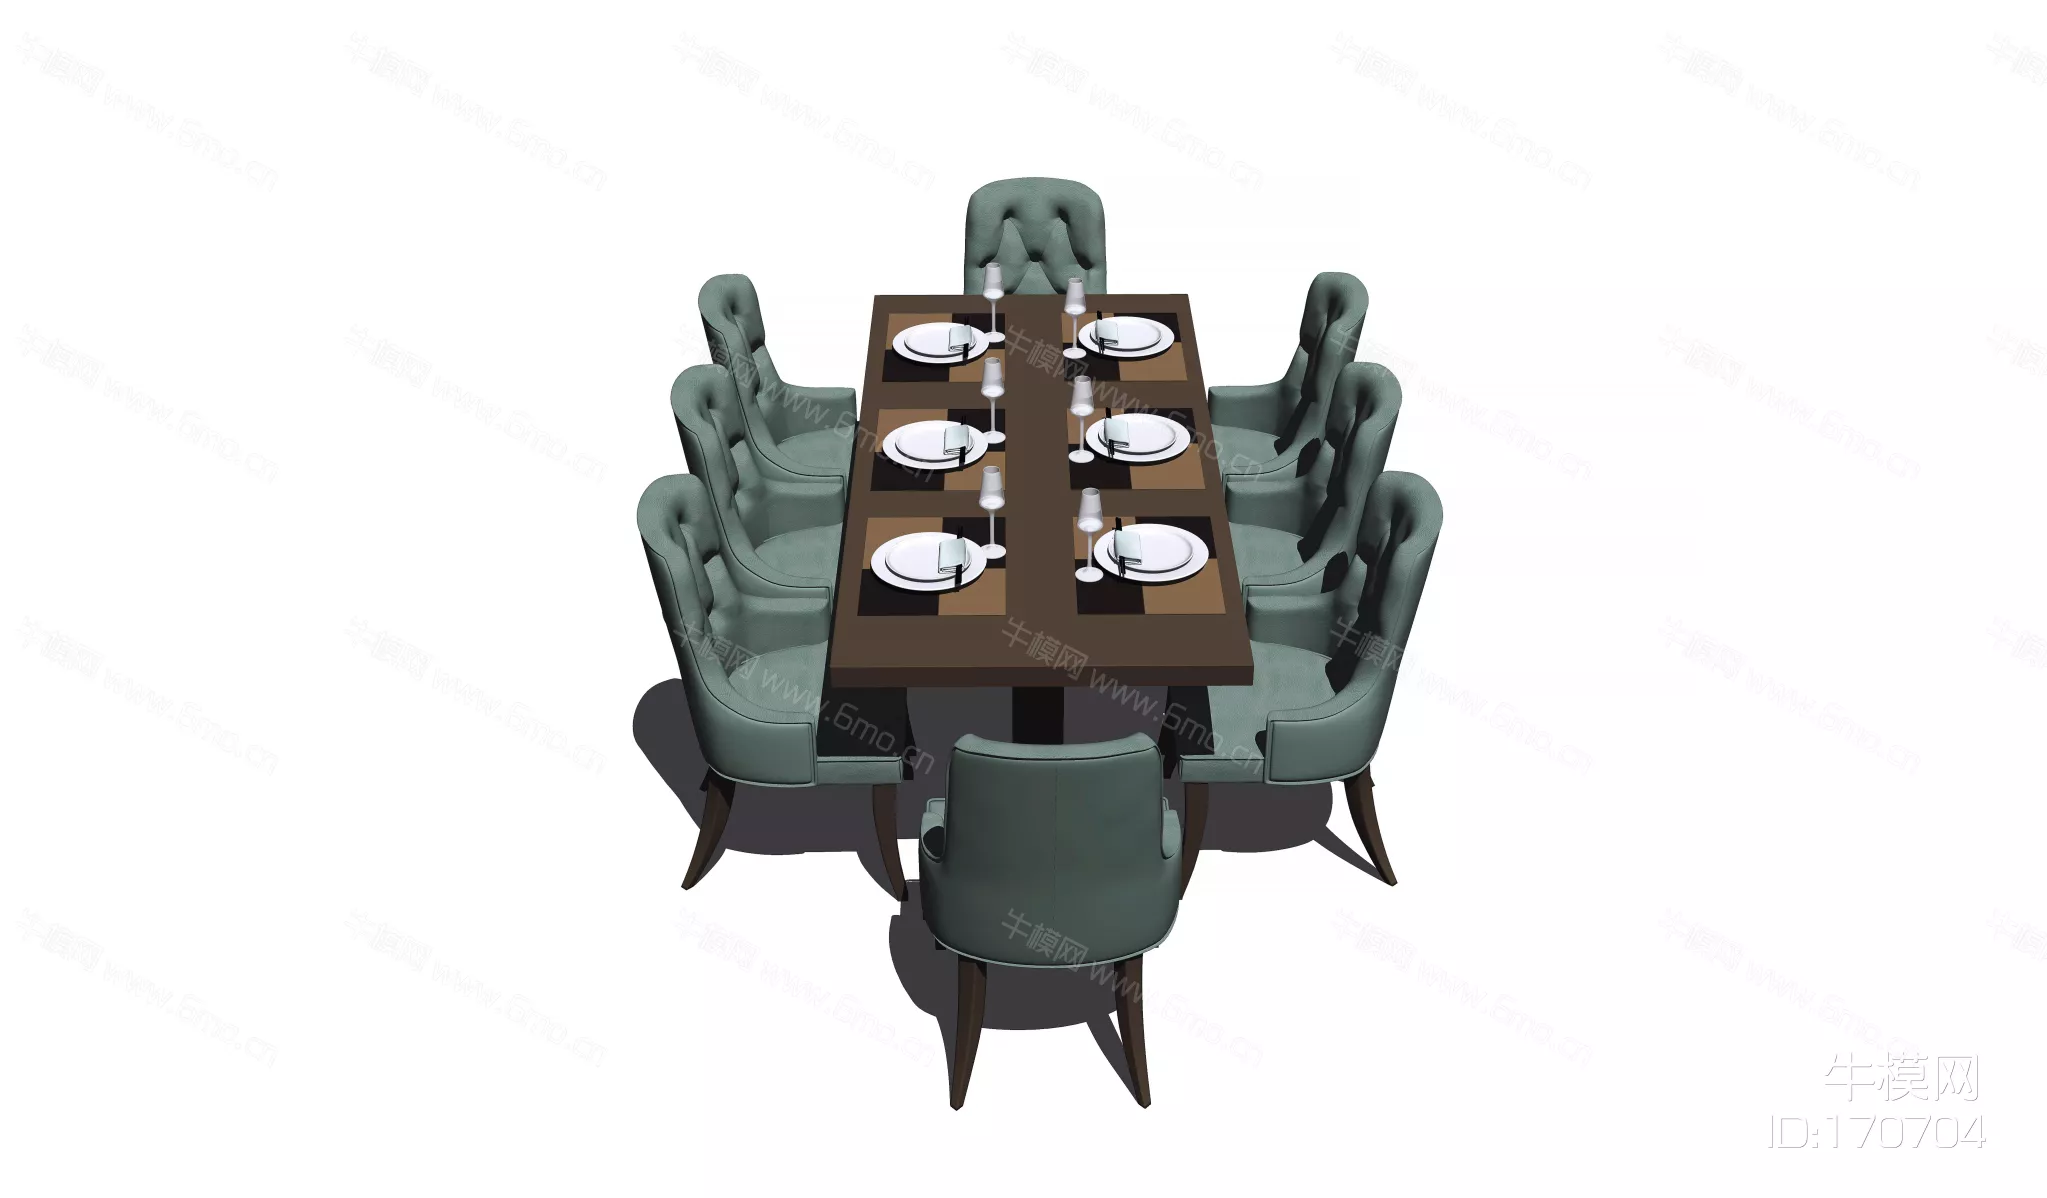 MODERN DINING TABLE SET - SKETCHUP 3D MODEL - ENSCAPE - 170704